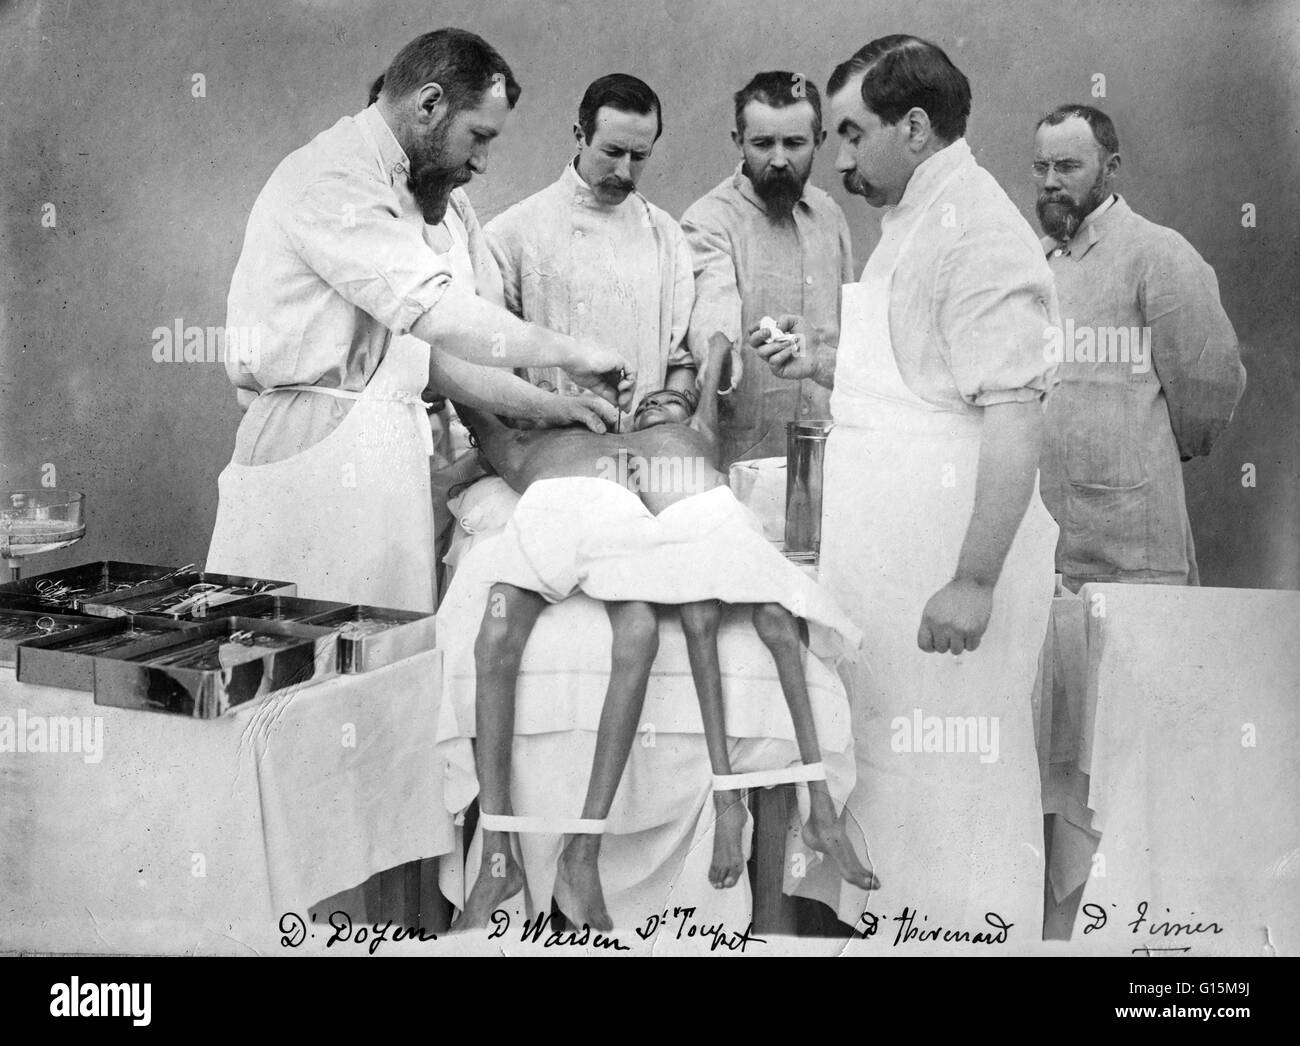 Eugène-Louis Doyen (16 dicembre 1859 - 21 novembre 1916) era un chirurgo francese. Doyen era un esperto e innovativo medico. Egli è stato un pioniere nell'uso di elettrobisturi e elettrocoagulazione. Egli aveva un vivo interesse per la fotografia e la cinematografia, Foto Stock